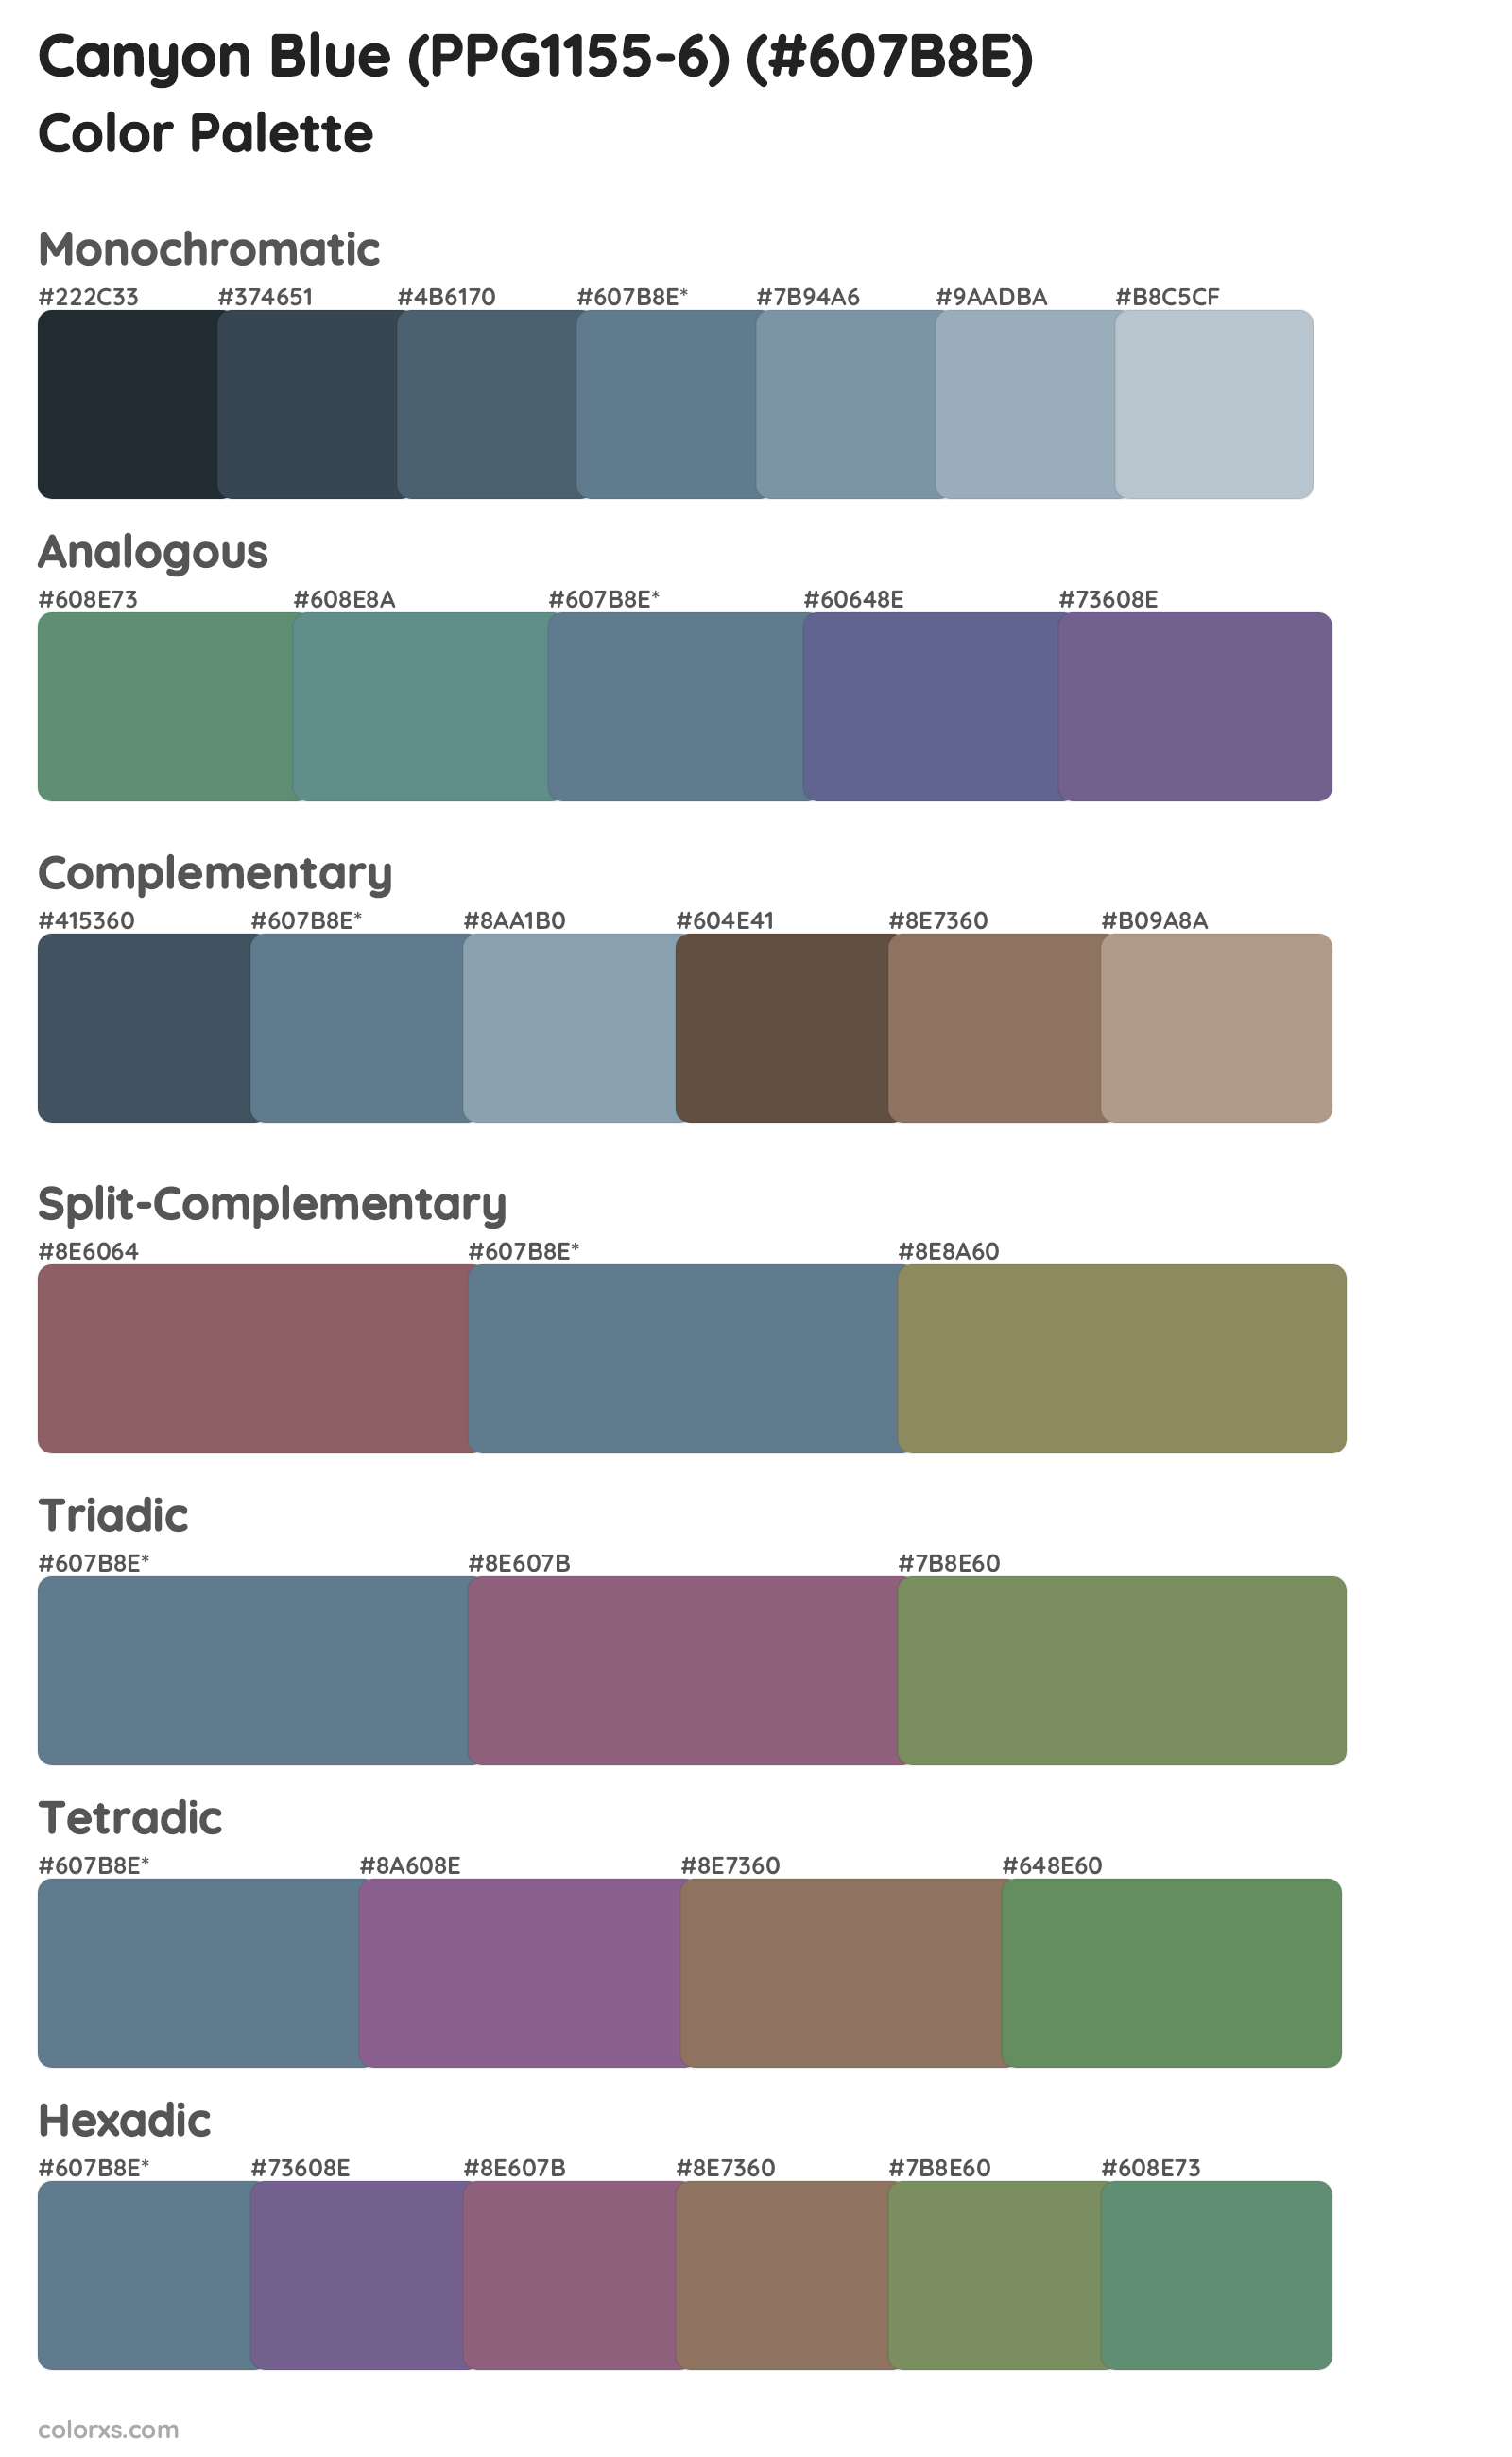 Canyon Blue (PPG1155-6) Color Scheme Palettes